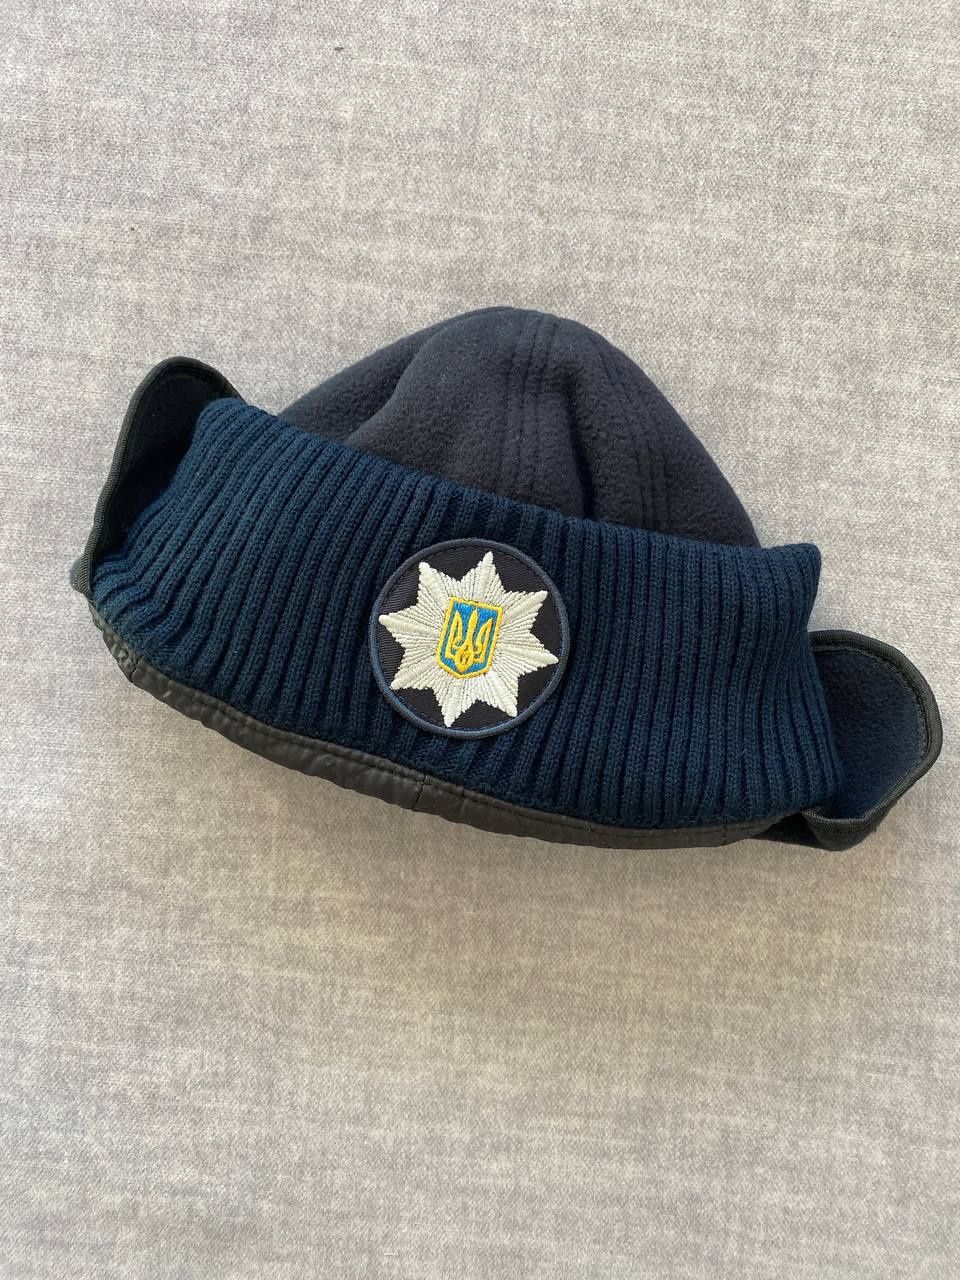 Продам шапку "поліція"